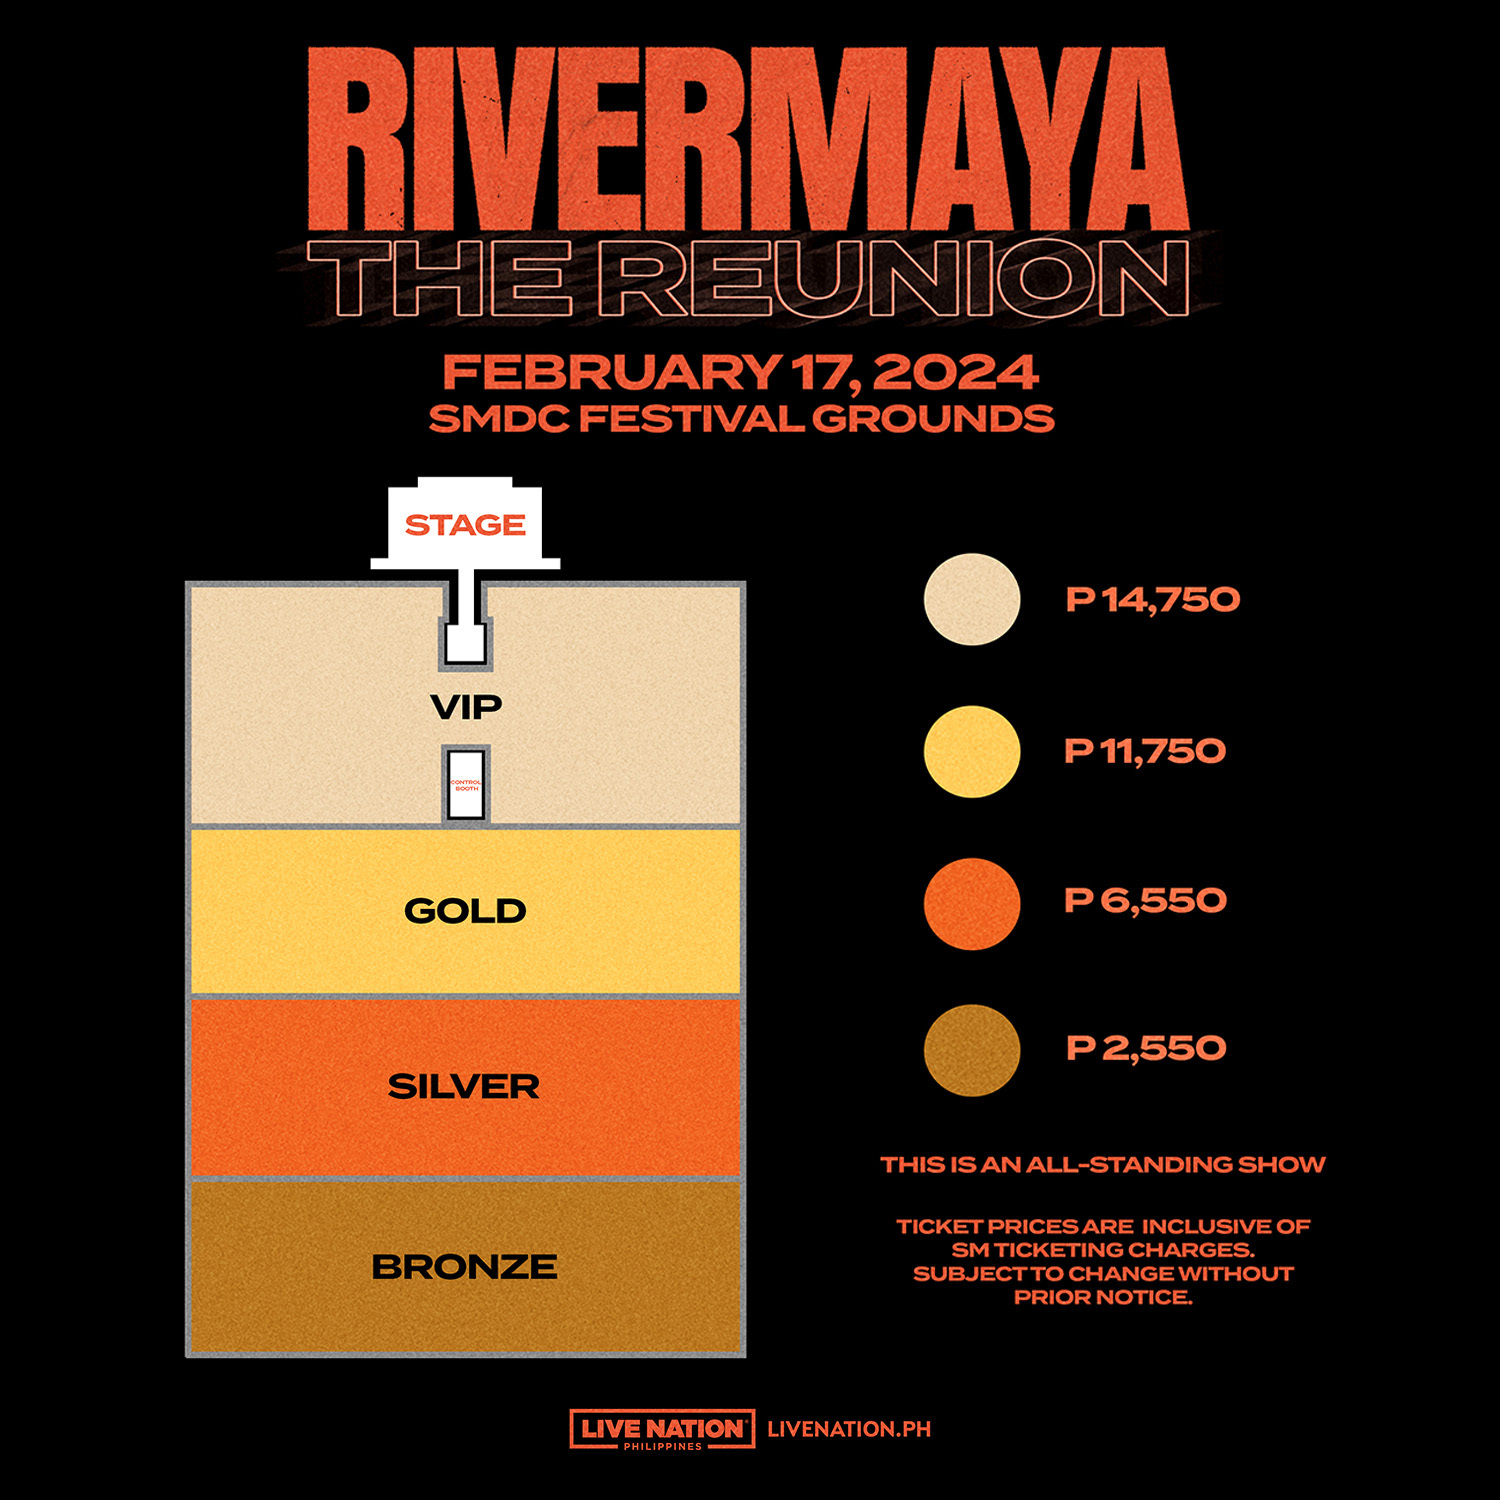 Rivermaya The Reunion seat plan